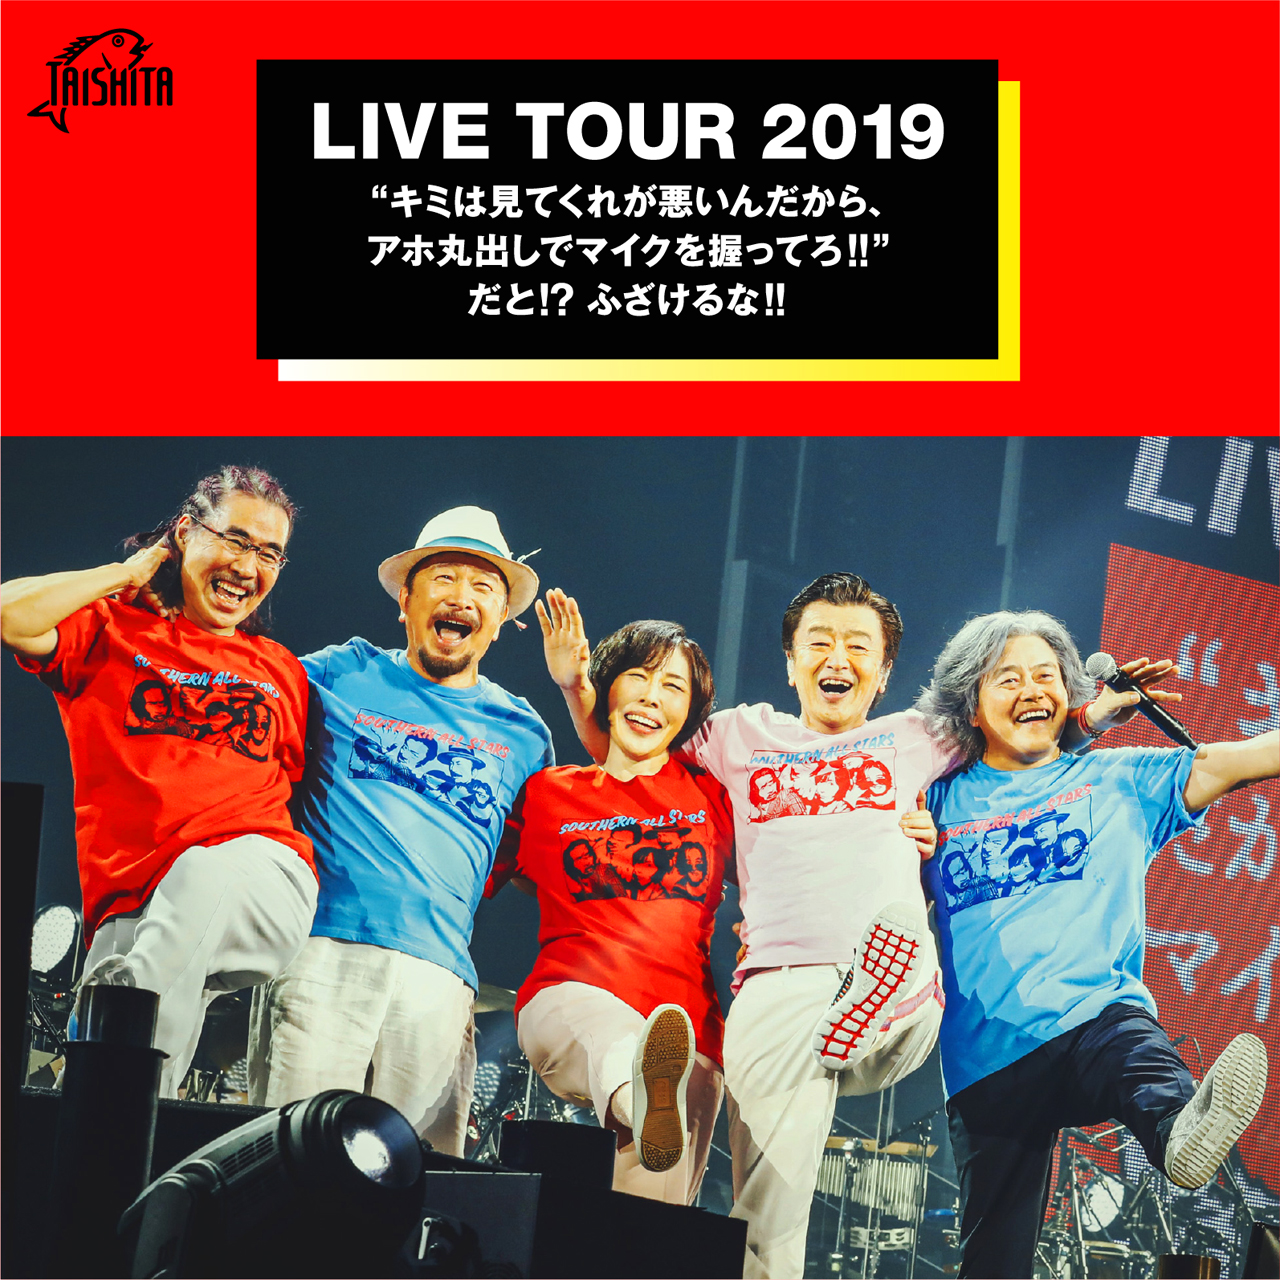 LIVE TOUR 2019 “キミは見てくれが悪いんだから、アホ丸出しでマイクを握ってろ!!” だと!? ふざけるな!!　セットリスト